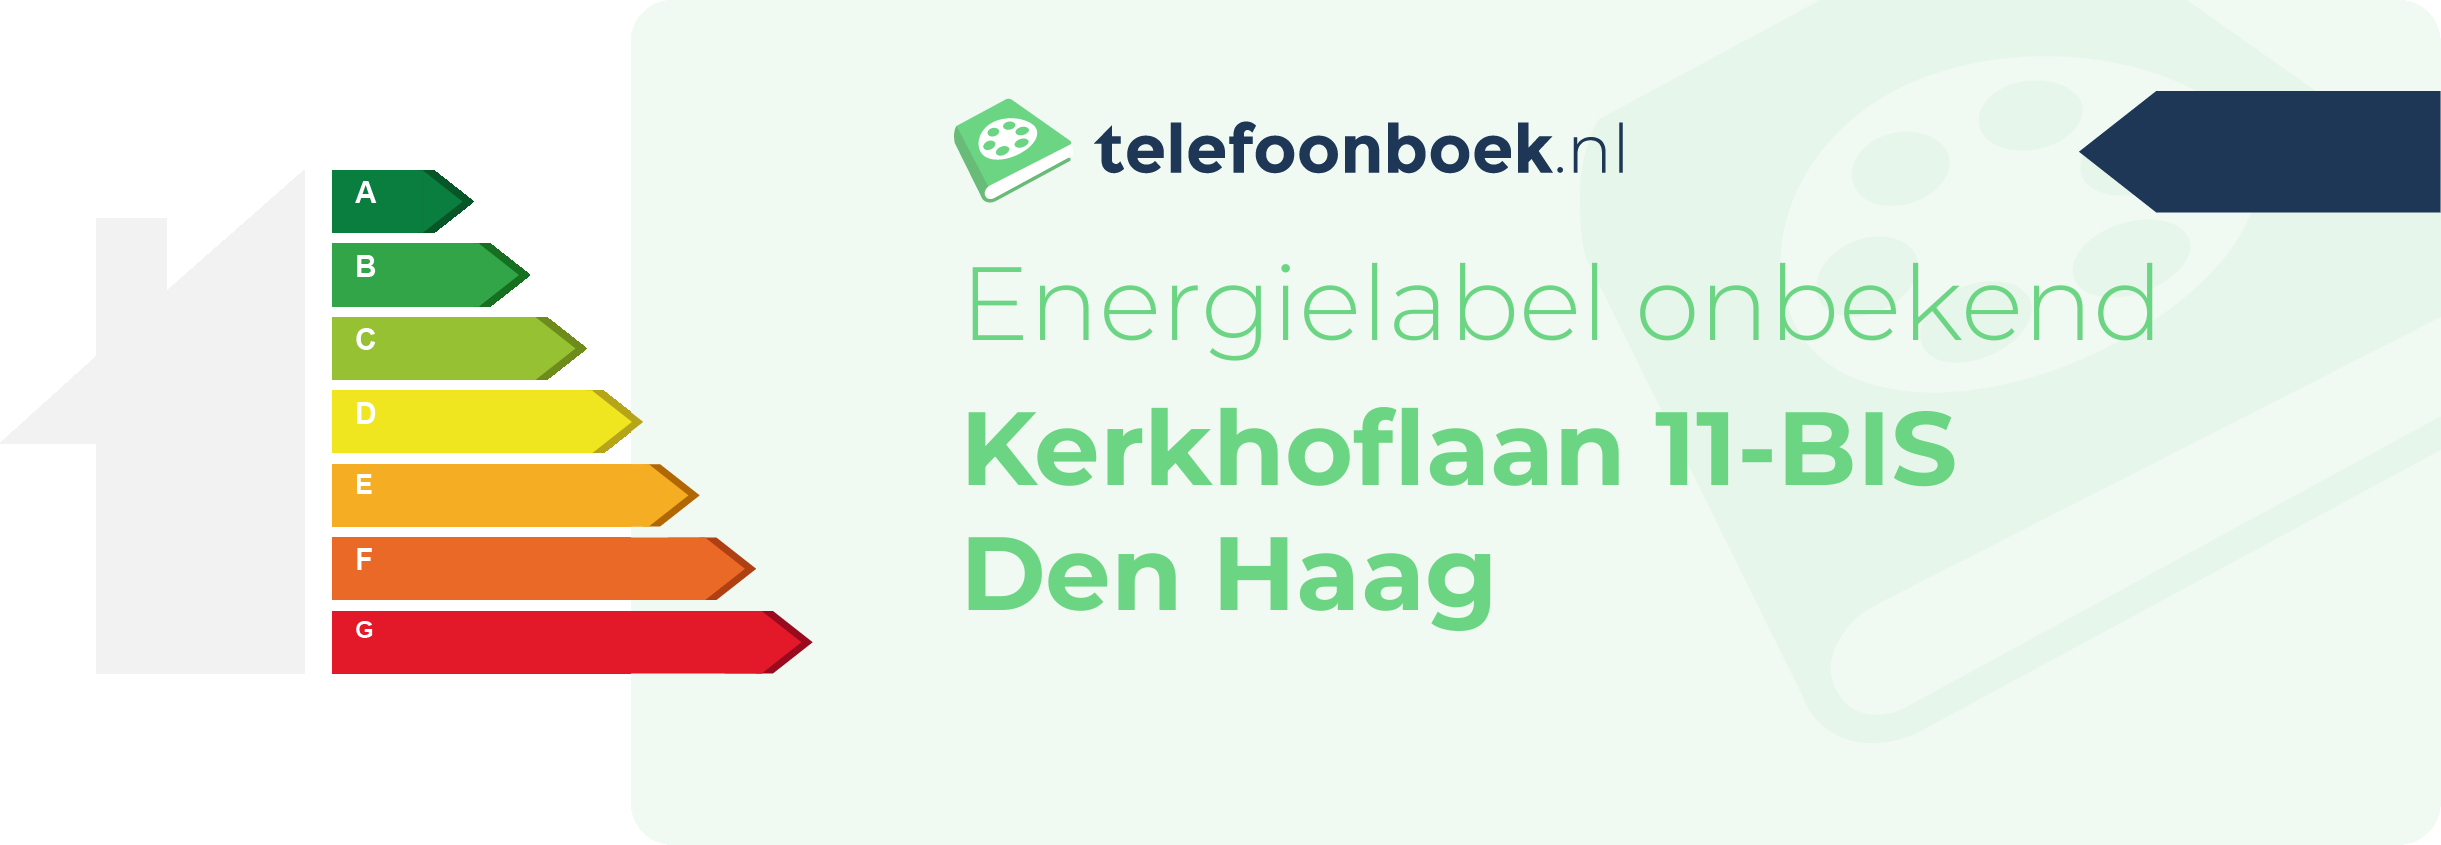 Energielabel Kerkhoflaan 11-BIS Den Haag